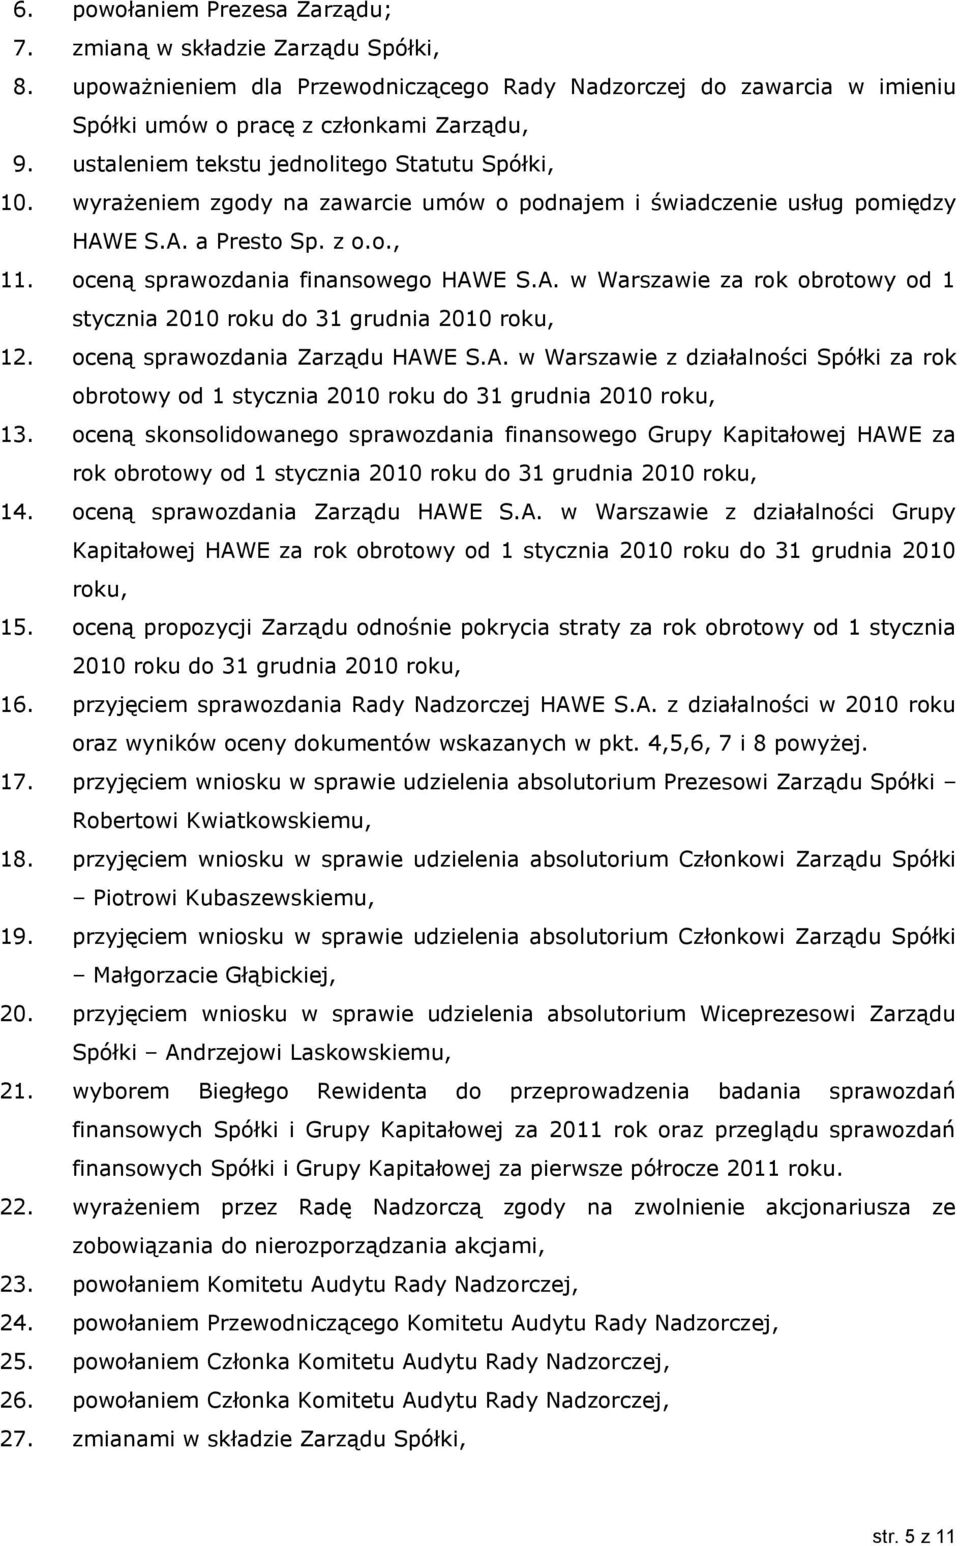 E S.A. a Presto Sp. z o.o., 11. oceną sprawozdania finansowego HAWE S.A. w Warszawie za rok obrotowy od 1 stycznia 2010 roku do 31 grudnia 2010 roku, 12. oceną sprawozdania Zarządu HAWE S.A. w Warszawie z działalności Spółki za rok obrotowy od 1 stycznia 2010 roku do 31 grudnia 2010 roku, 13.